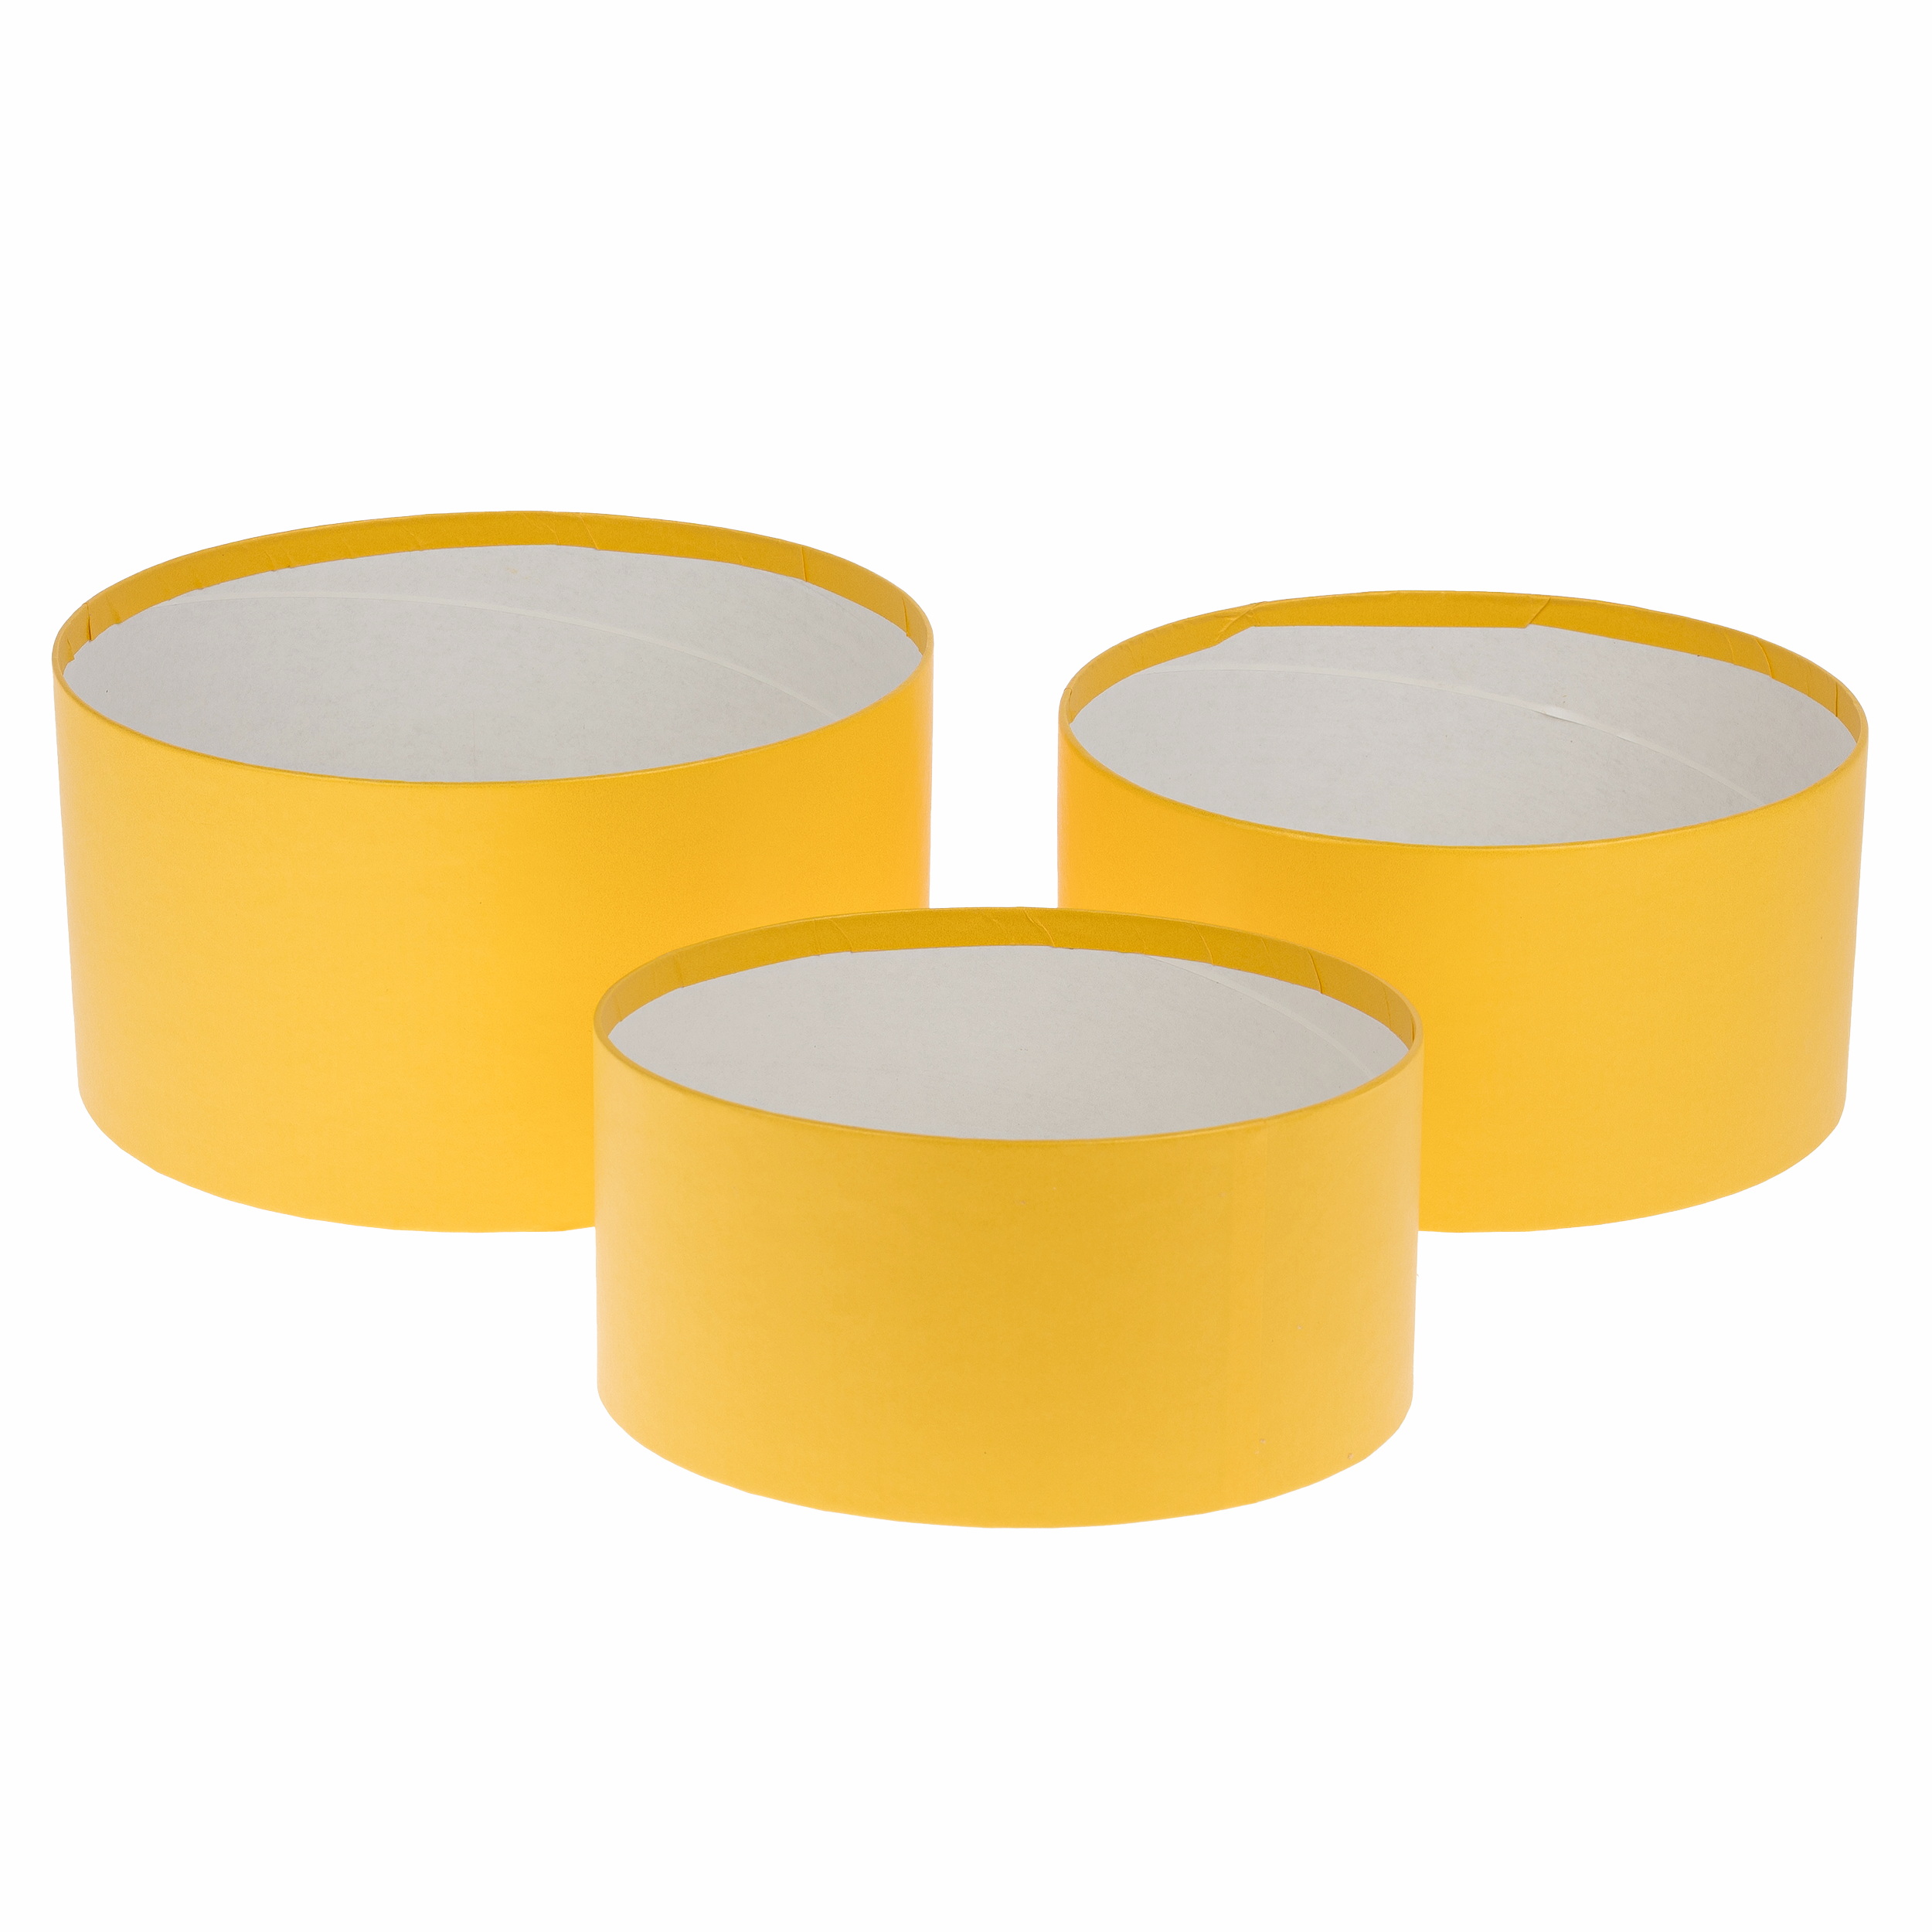 Набор коробок шляпных без крышки, D22xH11,8 см, D20xH10 см, D18xH8,8 см (3шт) желтый